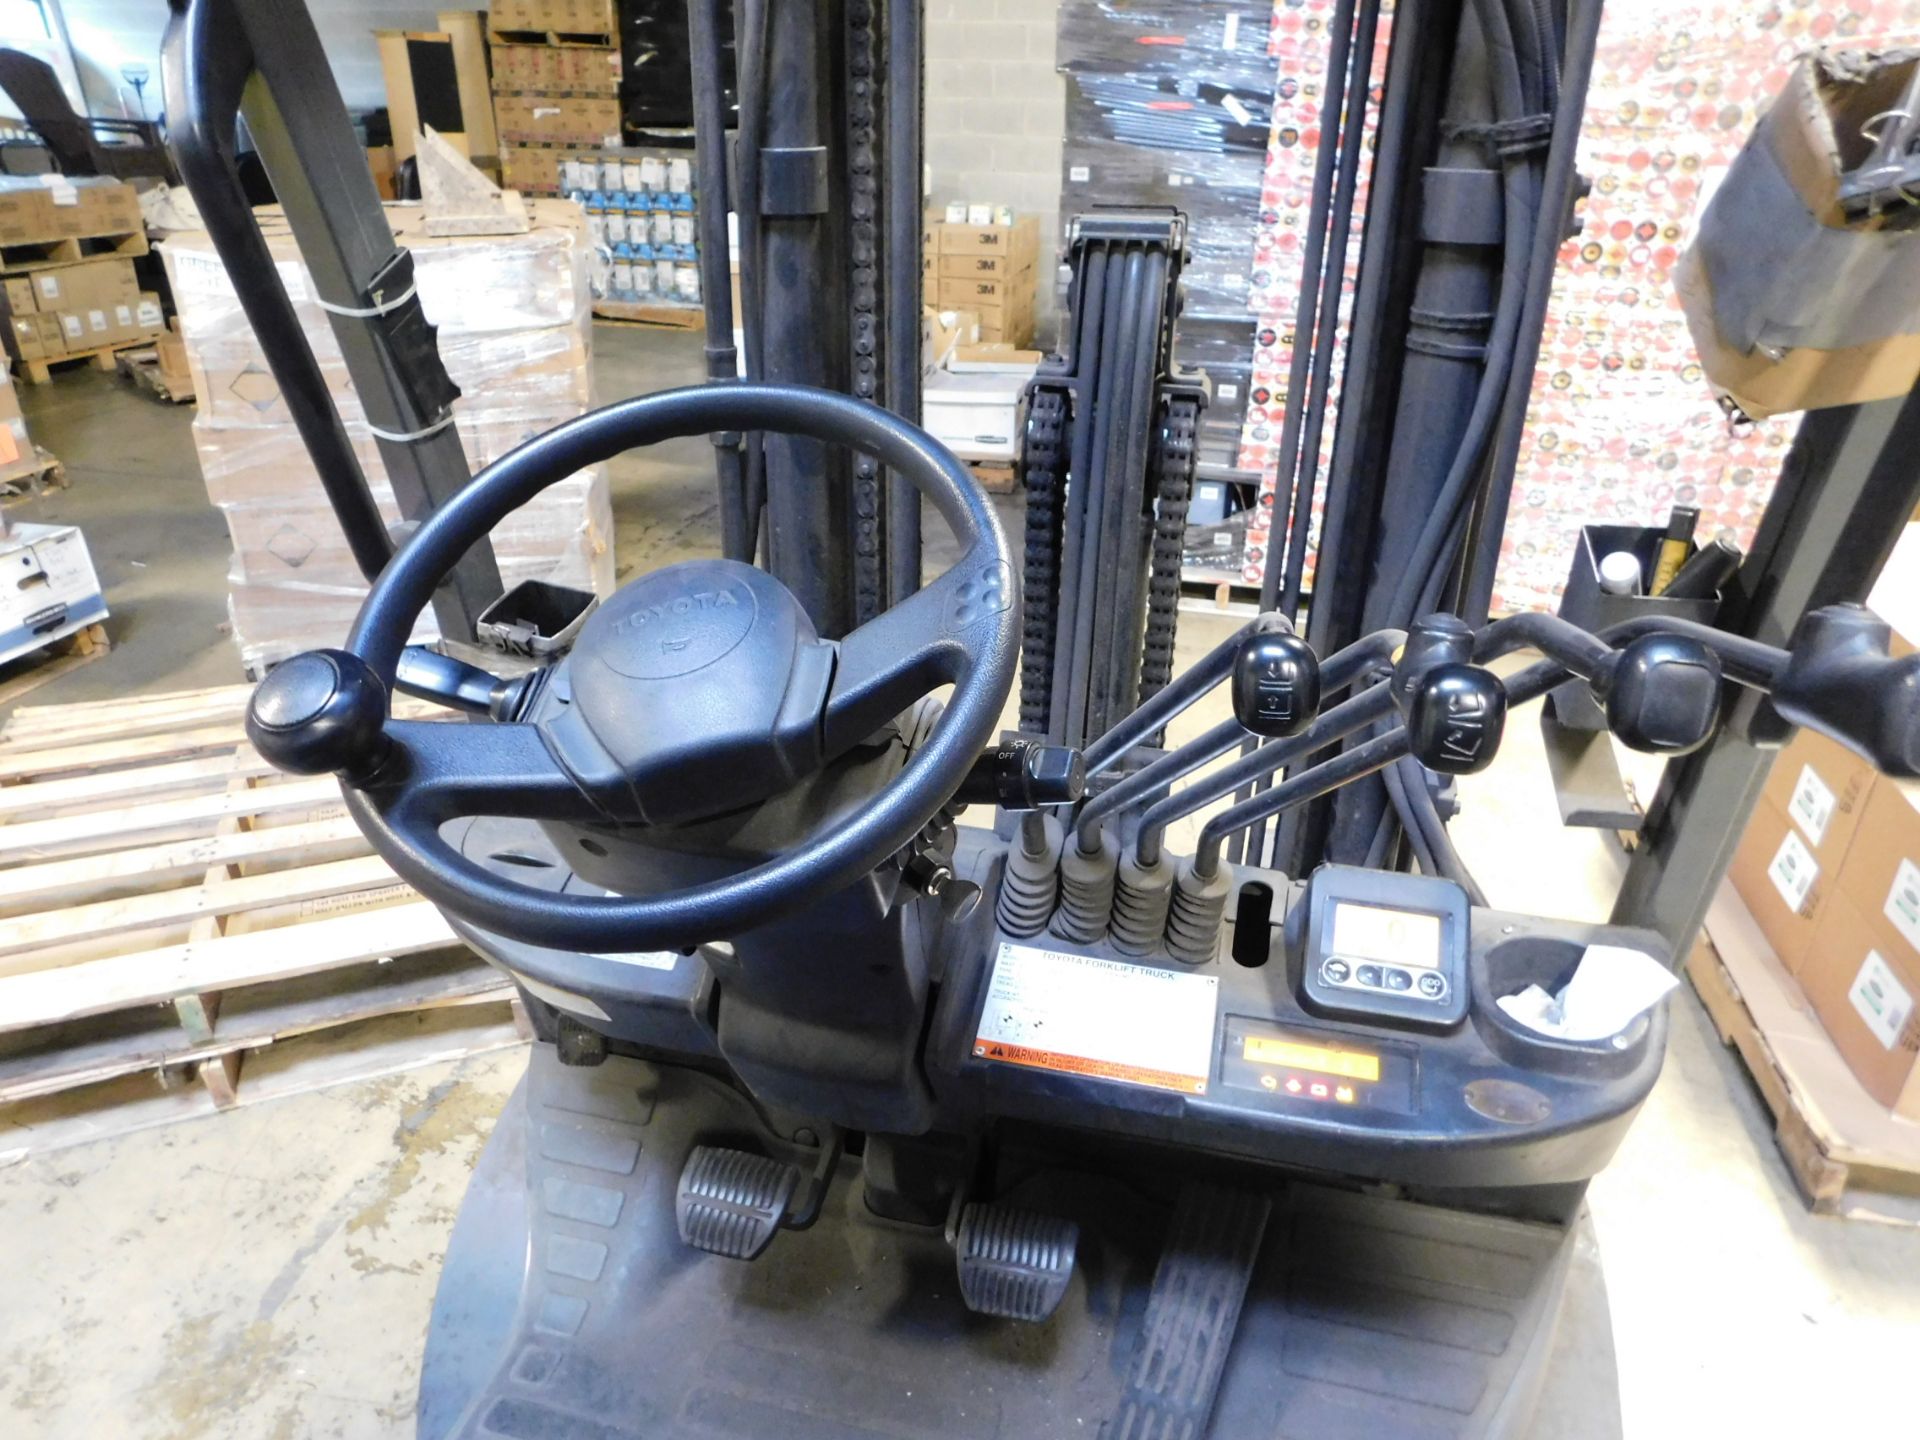 2013 Toyota Forklift, Model 8FGCU25, s/n 40136, 12,077 hrs., LP, Side Shift, Solid Tire, 5,000 lb. - Image 10 of 12